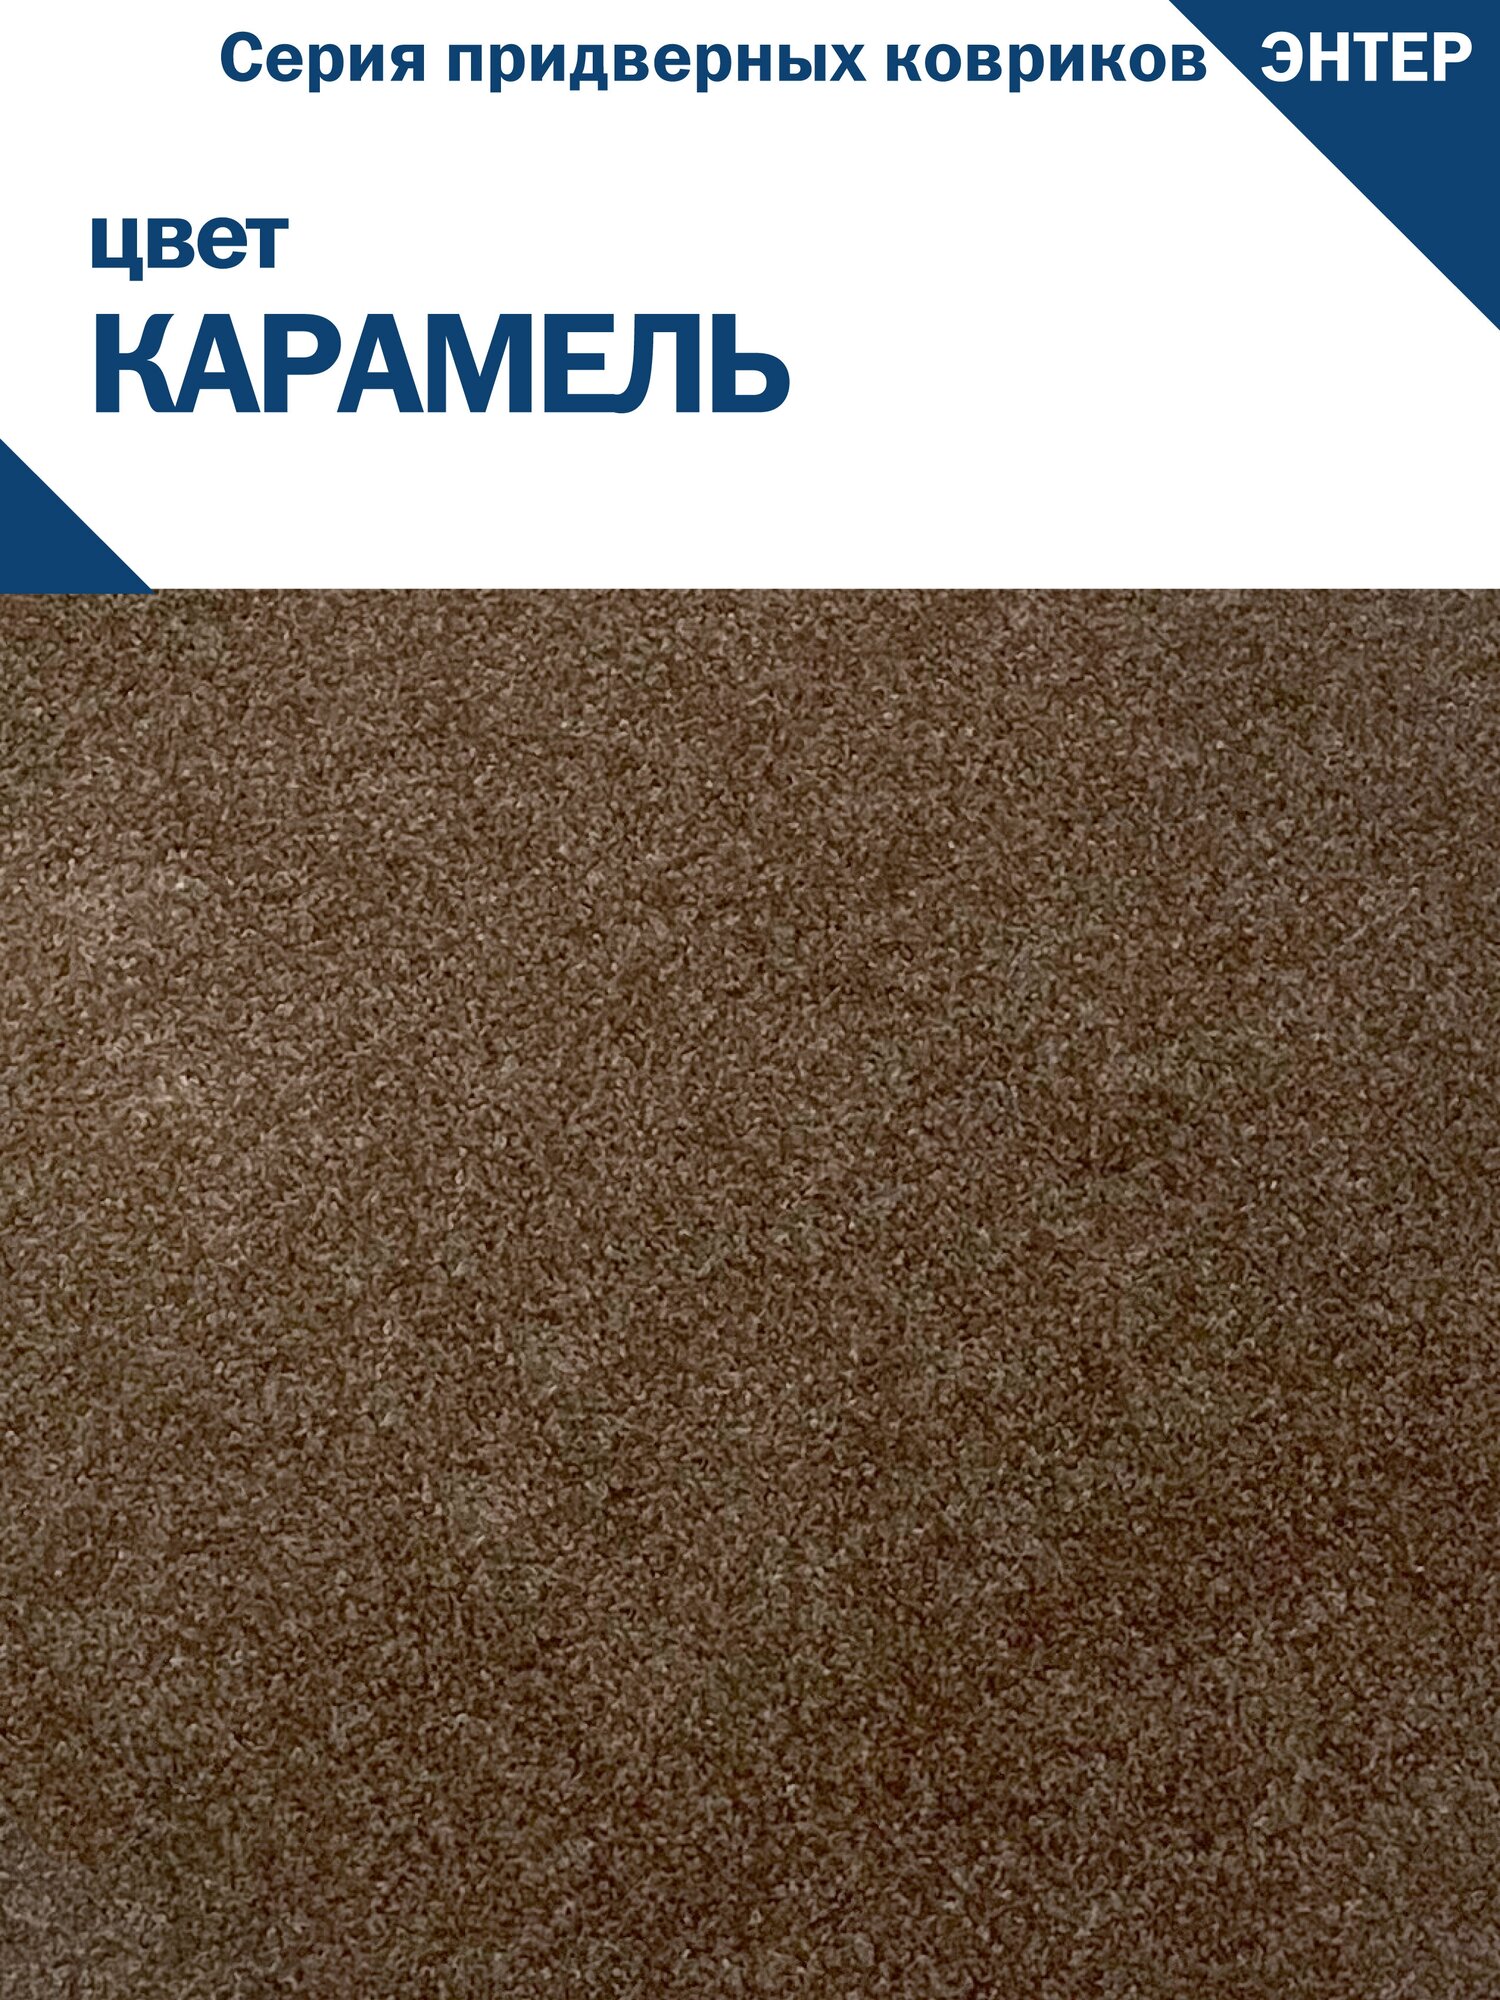 Придверный грязесобирающий коврик симаттекс, серия энтер, 80х120 см., Карамель - фотография № 2